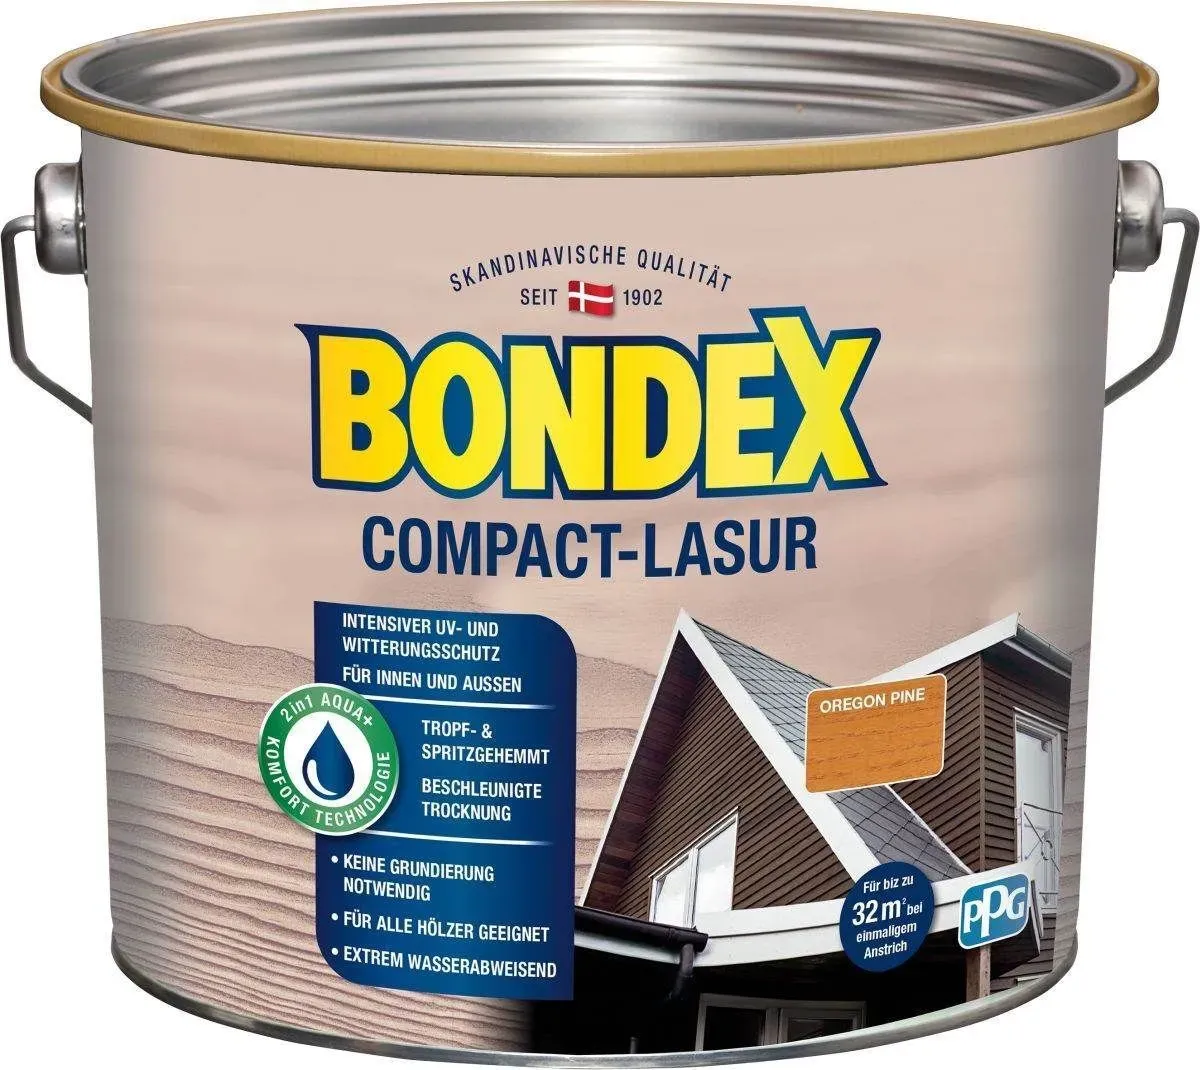 BONDEX Compact-Lasur, 0,75 - 2,5l, keine Grundierung notwendig, extrem wasserabweisend, 8 Farben